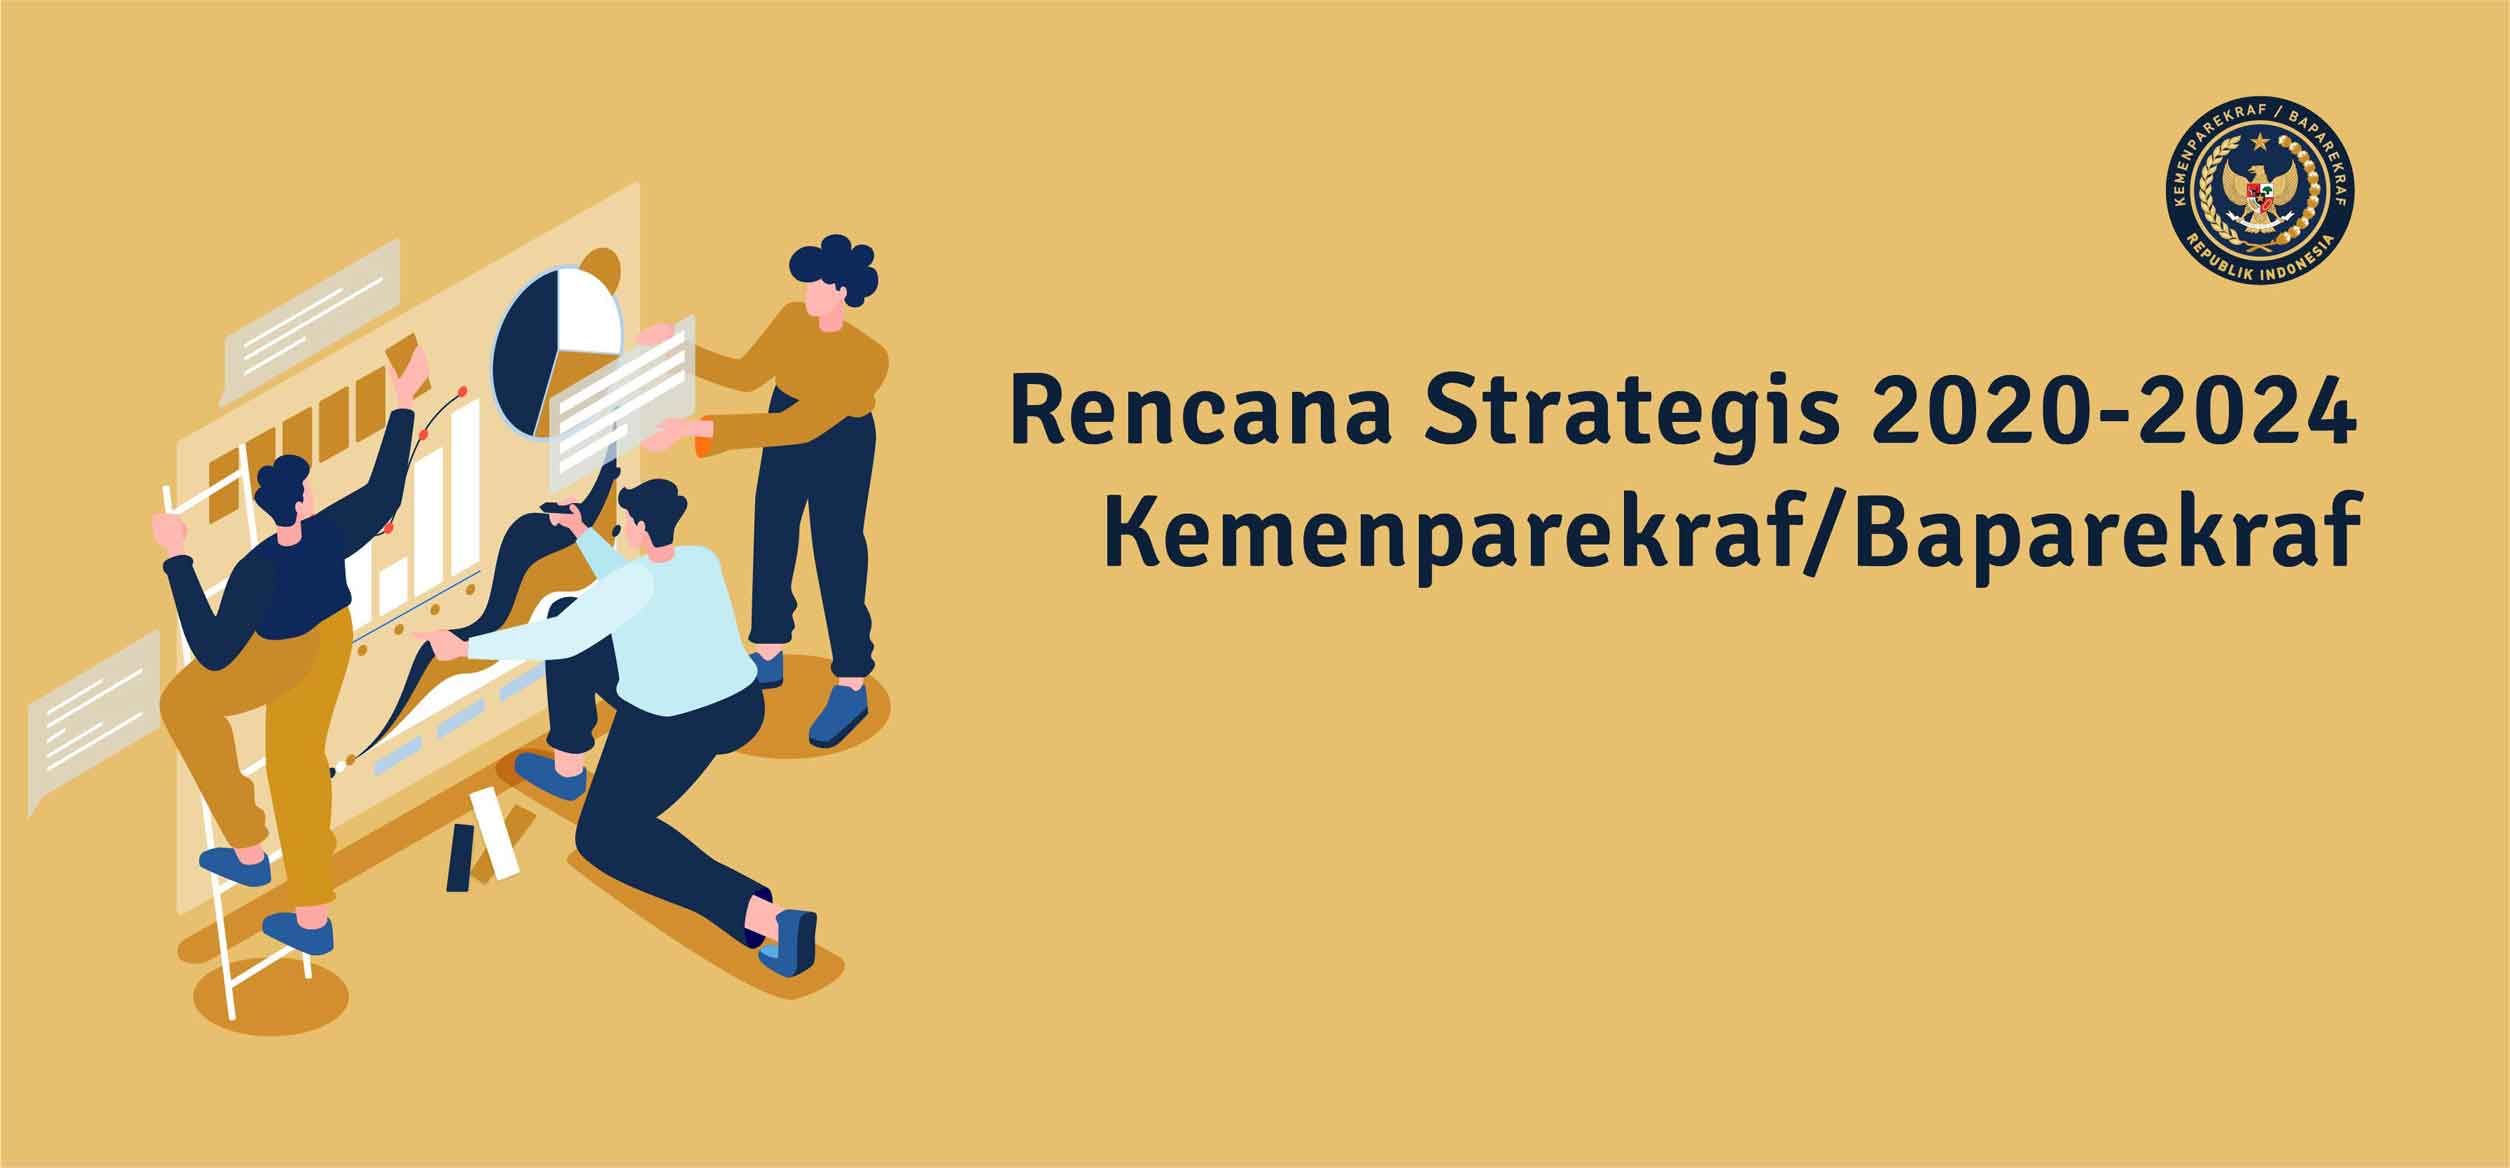 RENCANA STRATEGIS 2020-2024 KEMENPAREKRAF/BAPAREKRAF